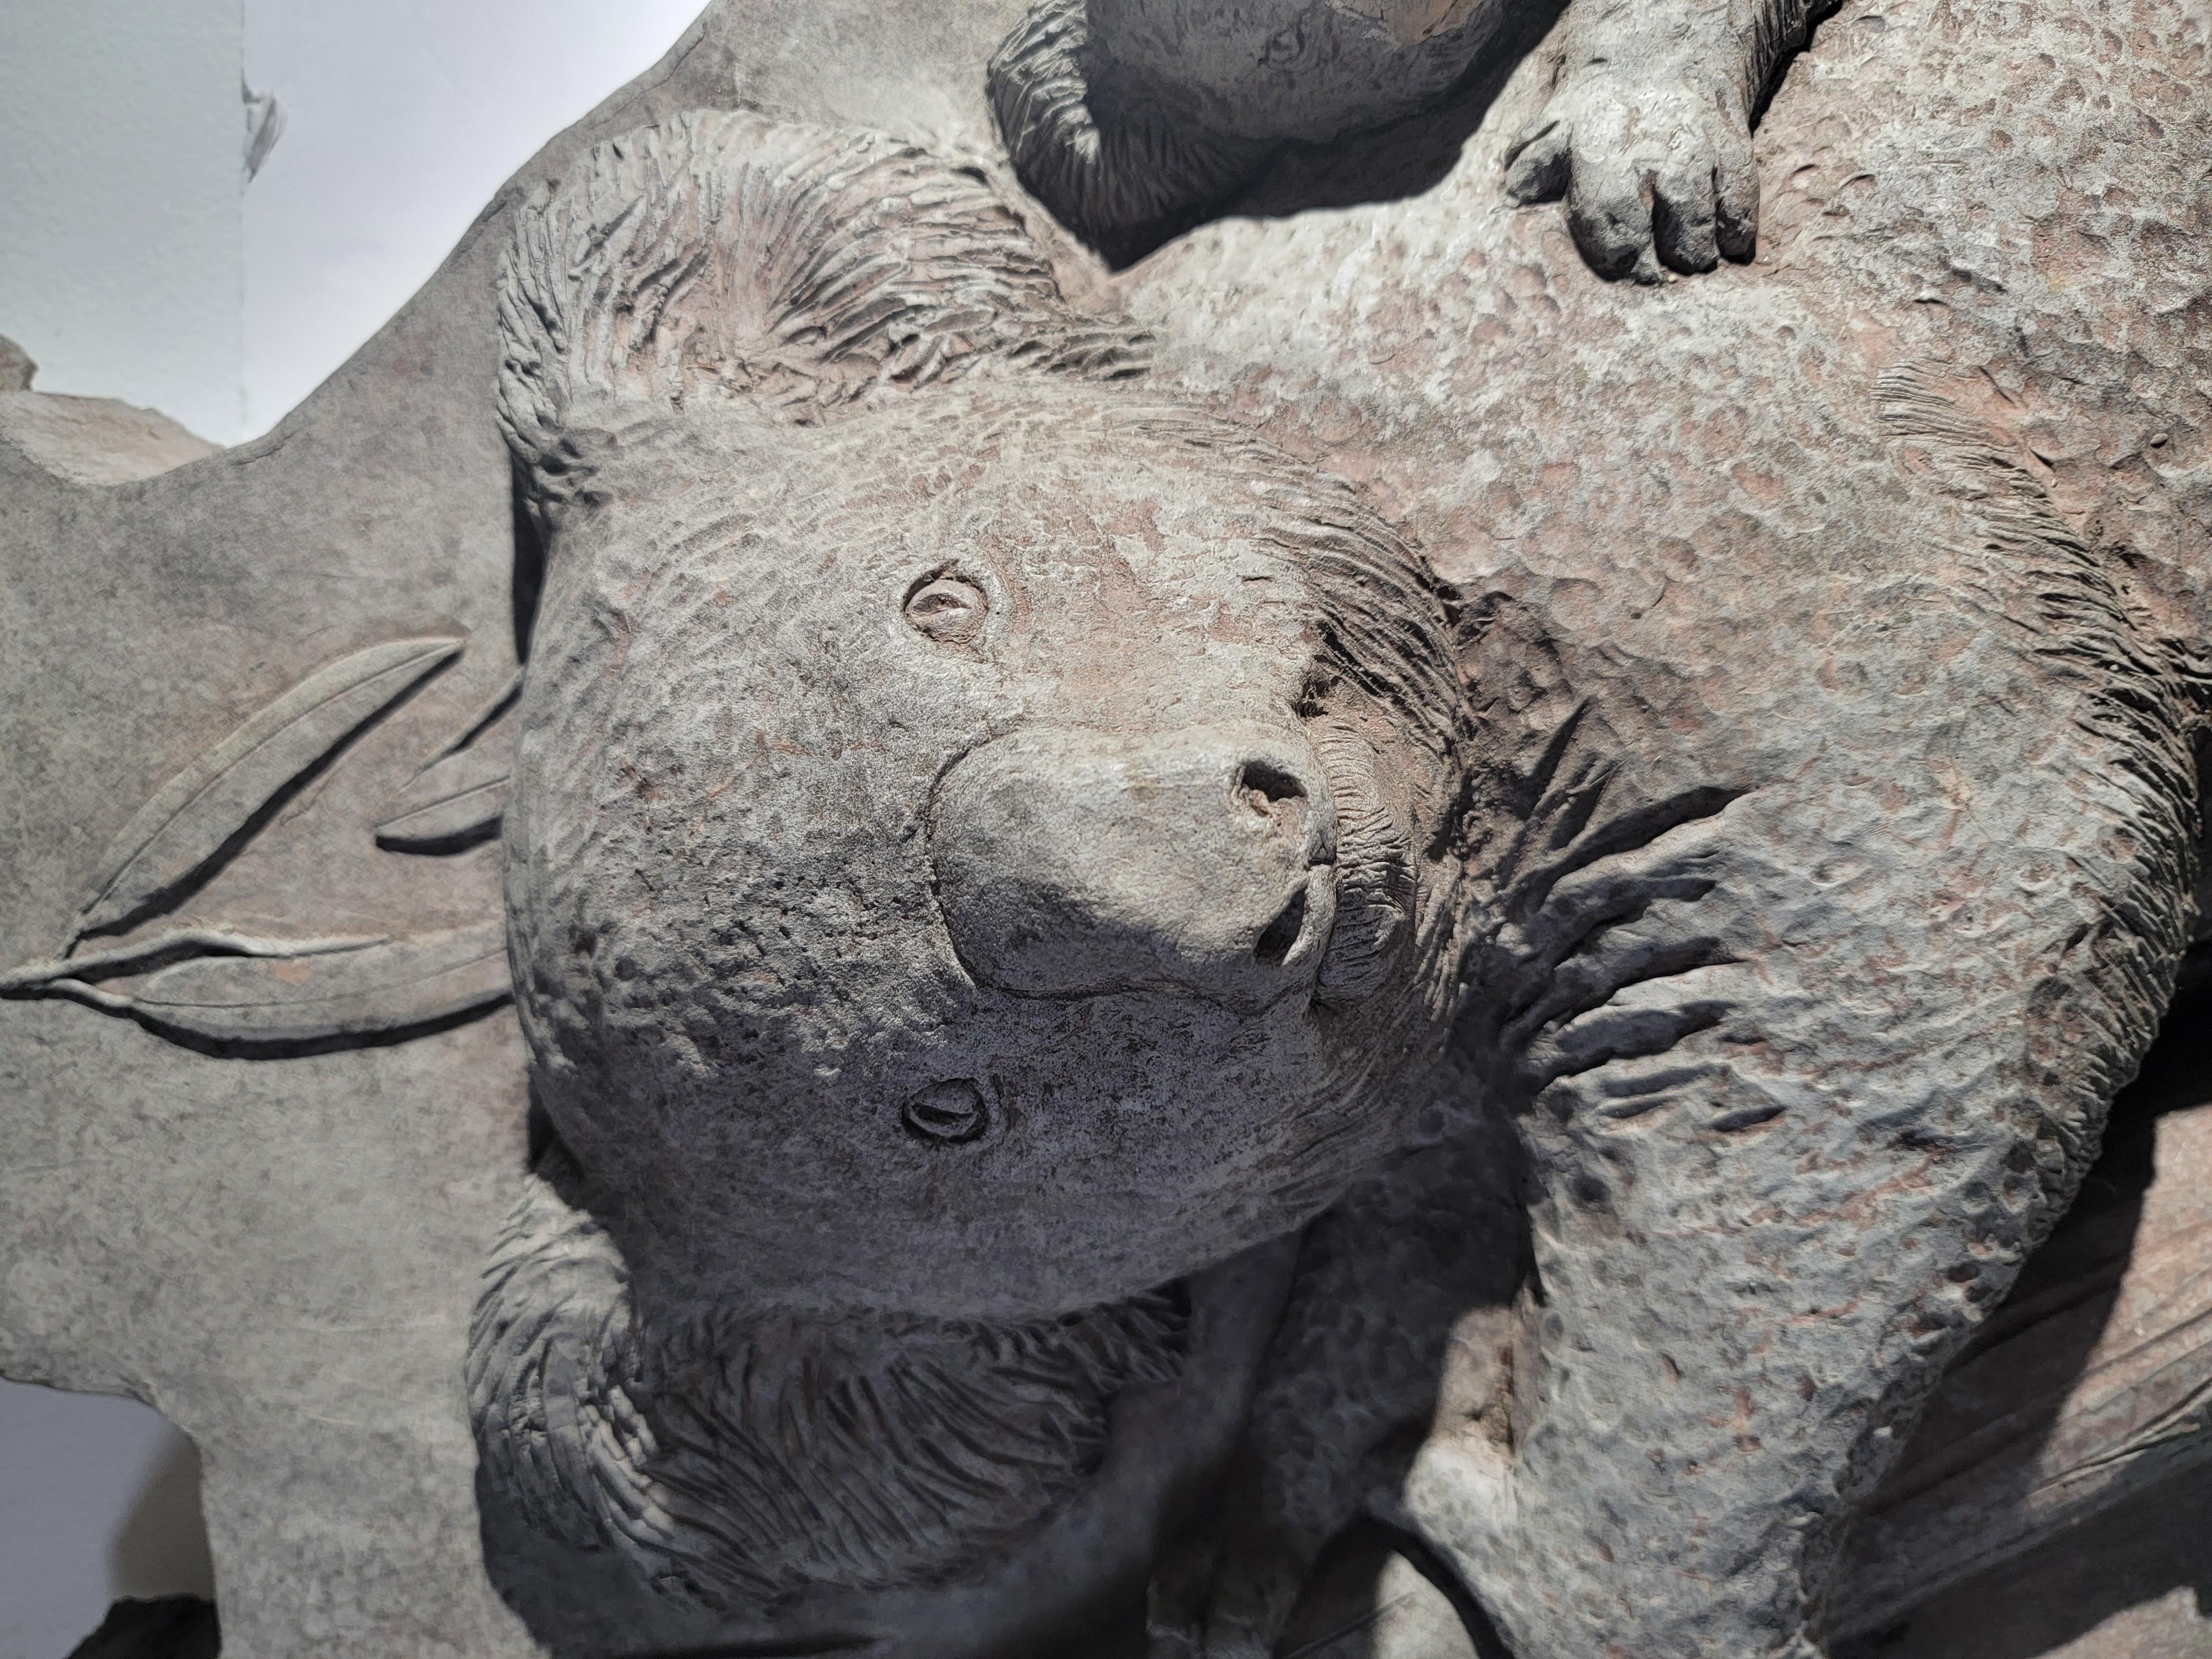 Sculpture artisanale de koala  ours sur le béton. La forme de l'ensemble de la sculpture est identique à celle du pays, l'Australie. Il s'agit d'une sculpture artisanale très lourde.